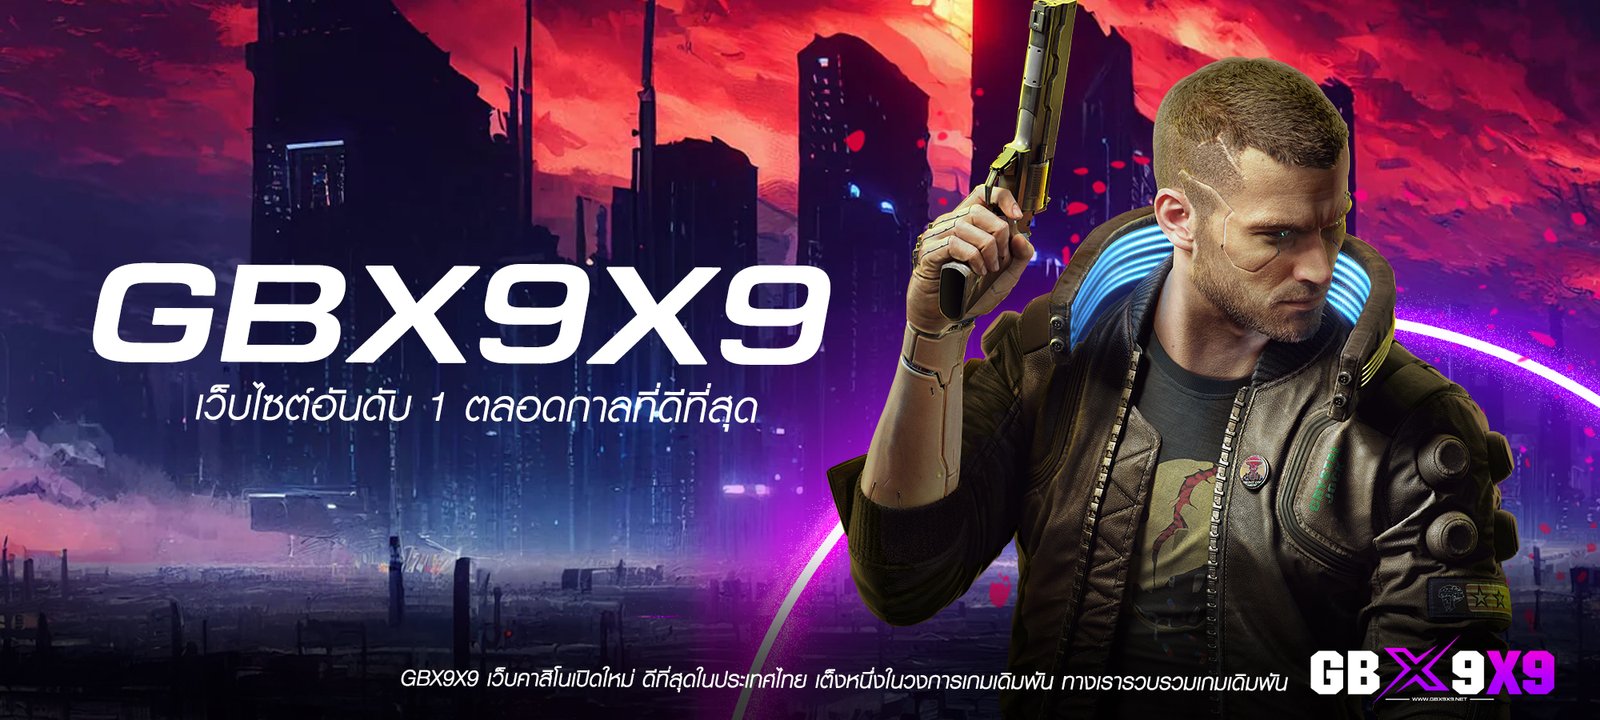 GBX9X9 เว็บคาสิโนอันดับ 1 ของไทย ลิขสิทธิ์แท้ ระบบ API จากอังกฤษ